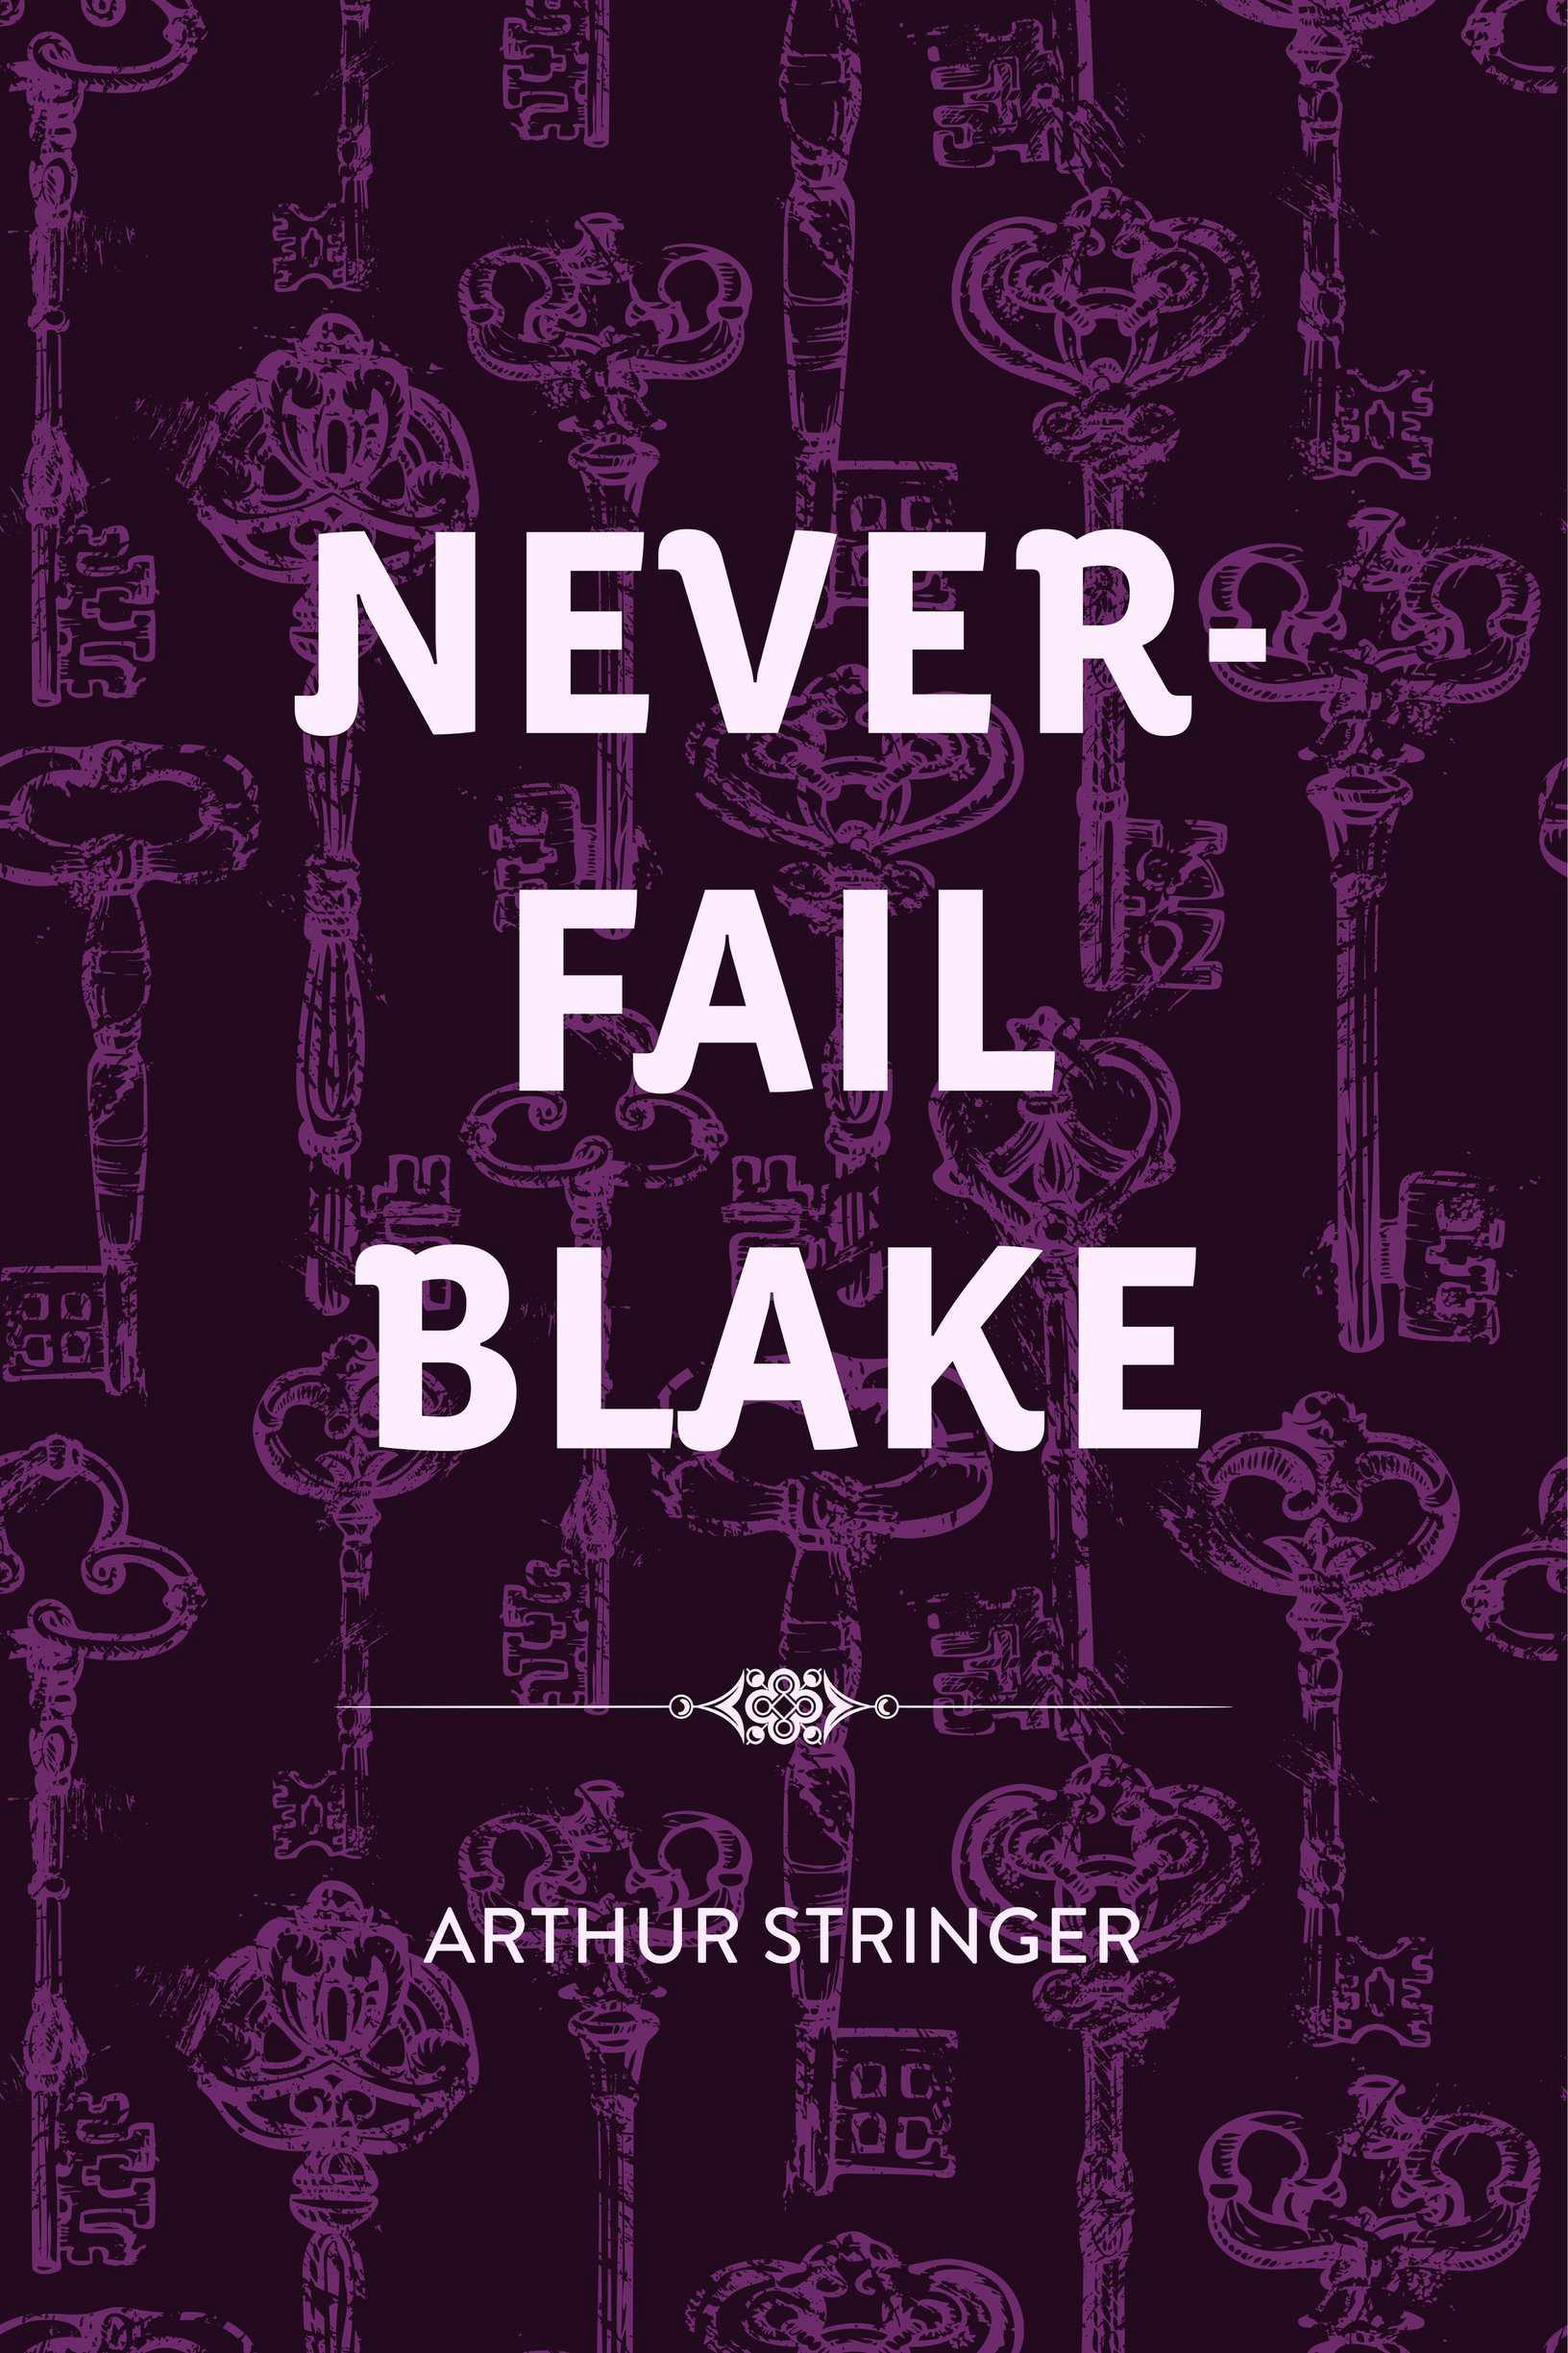 Never-Fail Blake - Arthur Stringer